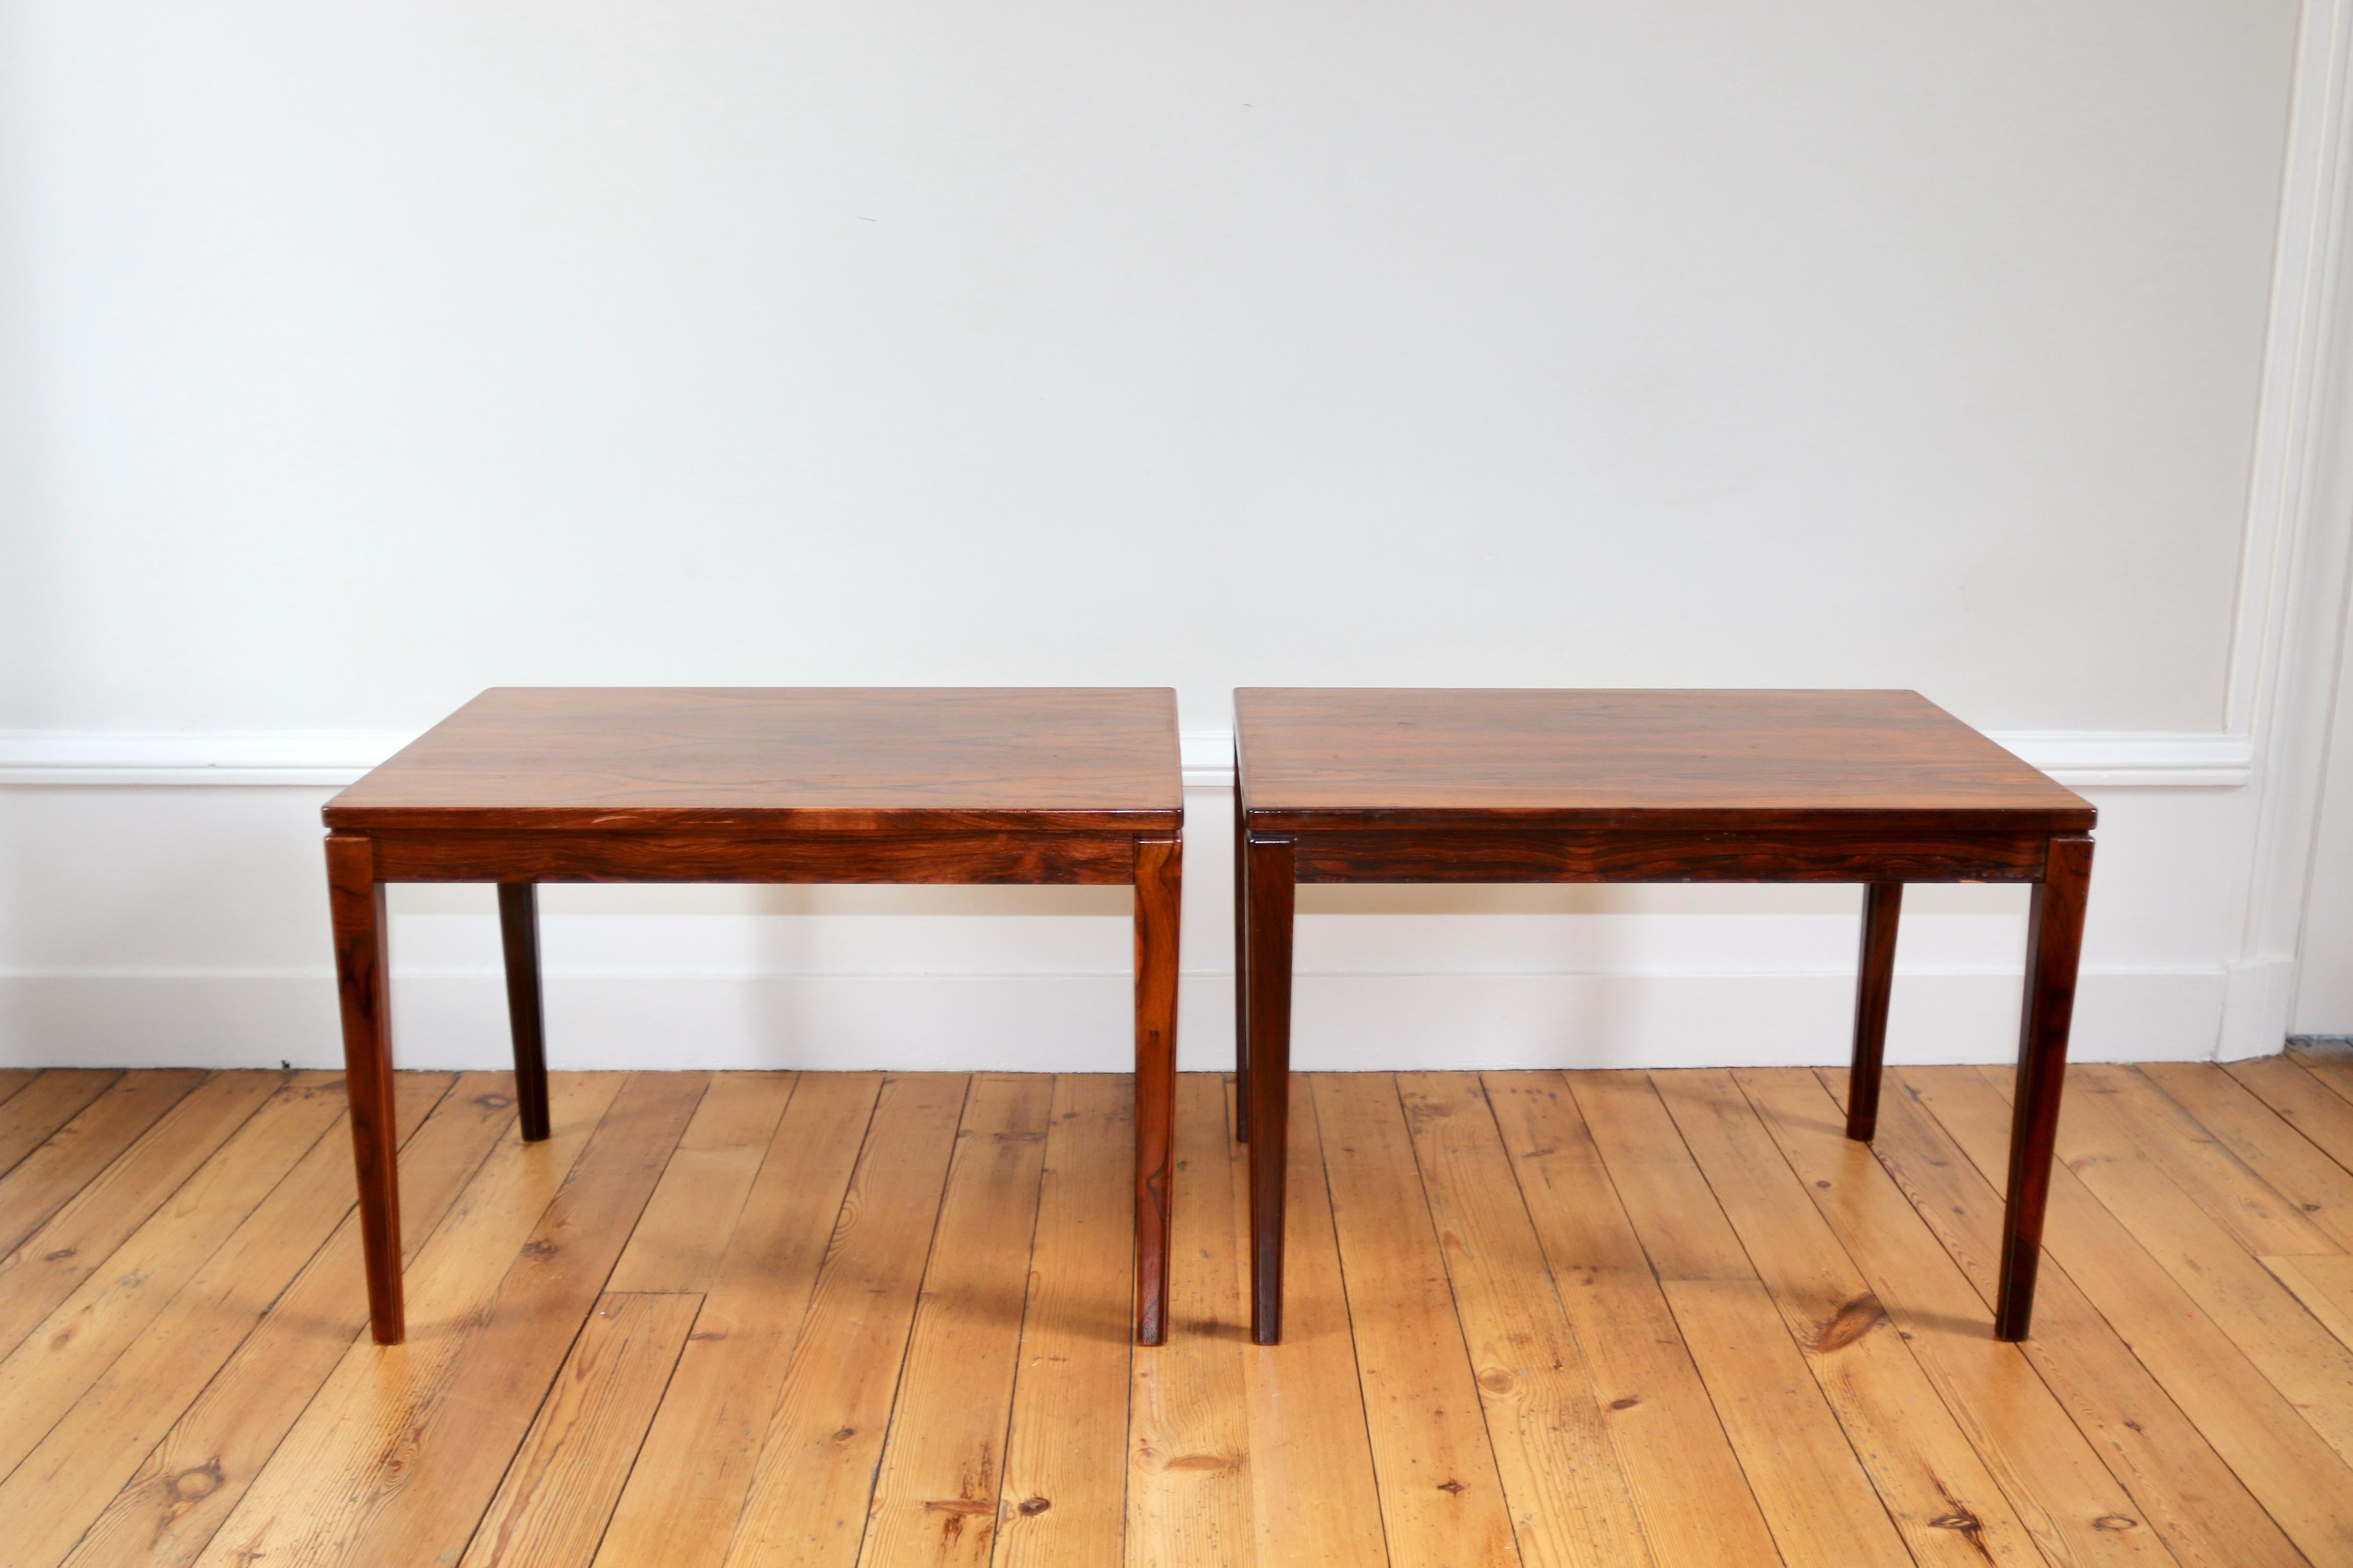 Paire de tables danoises en palissandre de Rio des années 60

en excellent état

dimensions : largeur 45 cm x longueur 65 cm x hauteur 45 cm